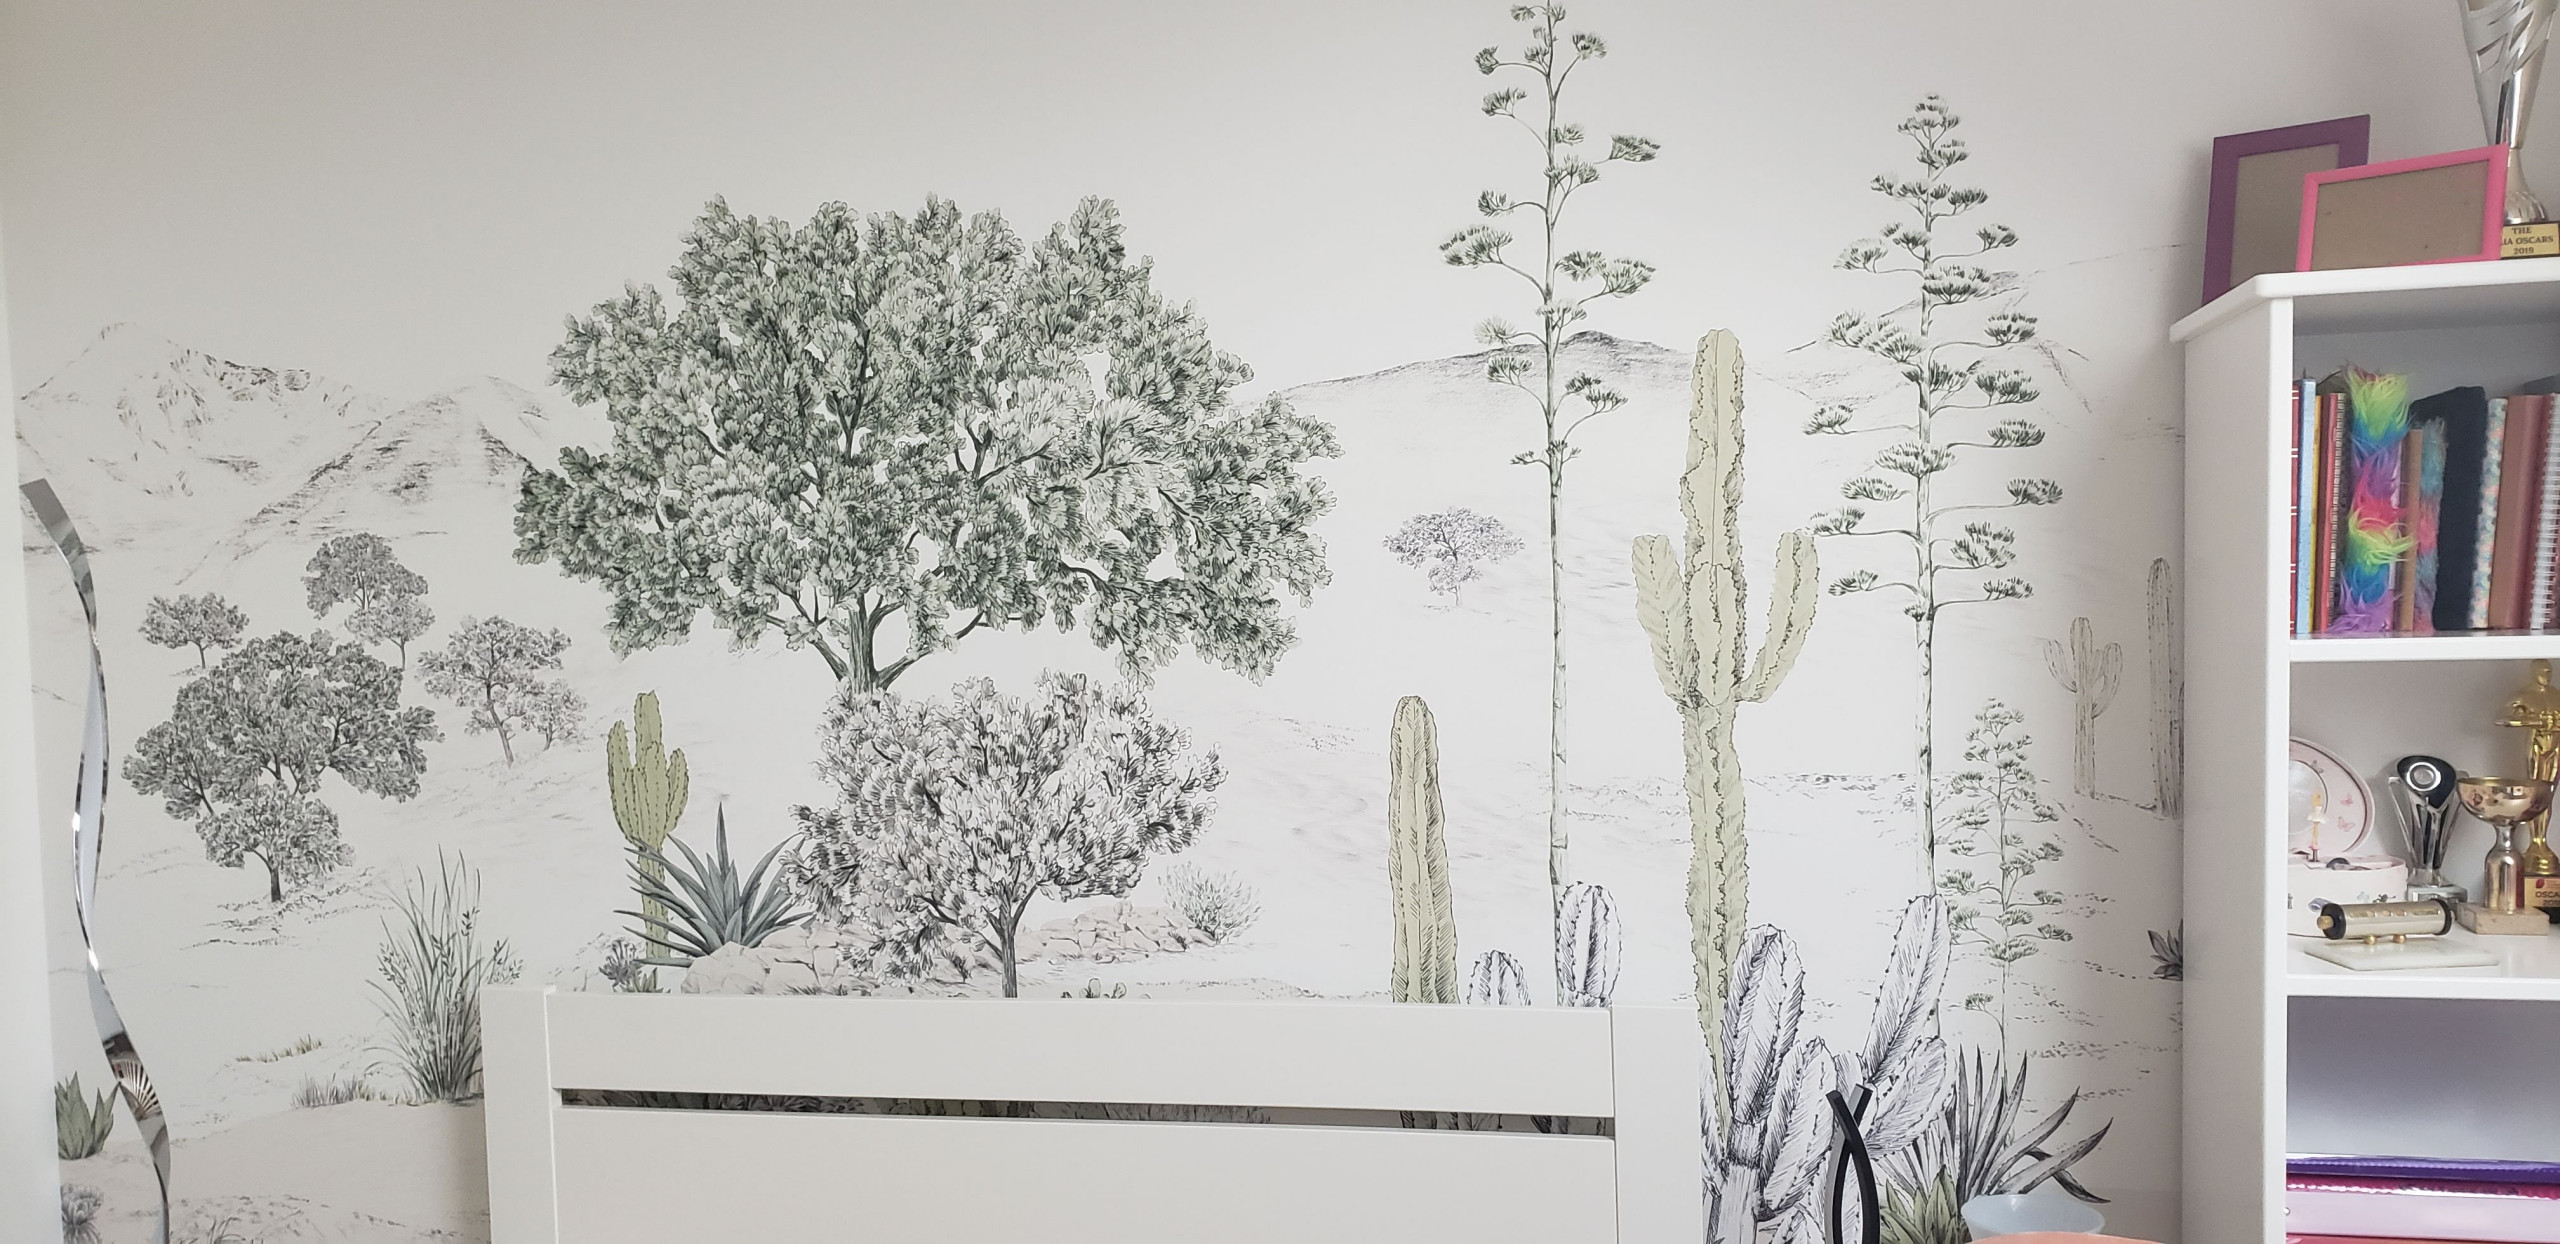 Rénovation chambre fille - Le papier peint panoramique Isidore Leroy posé